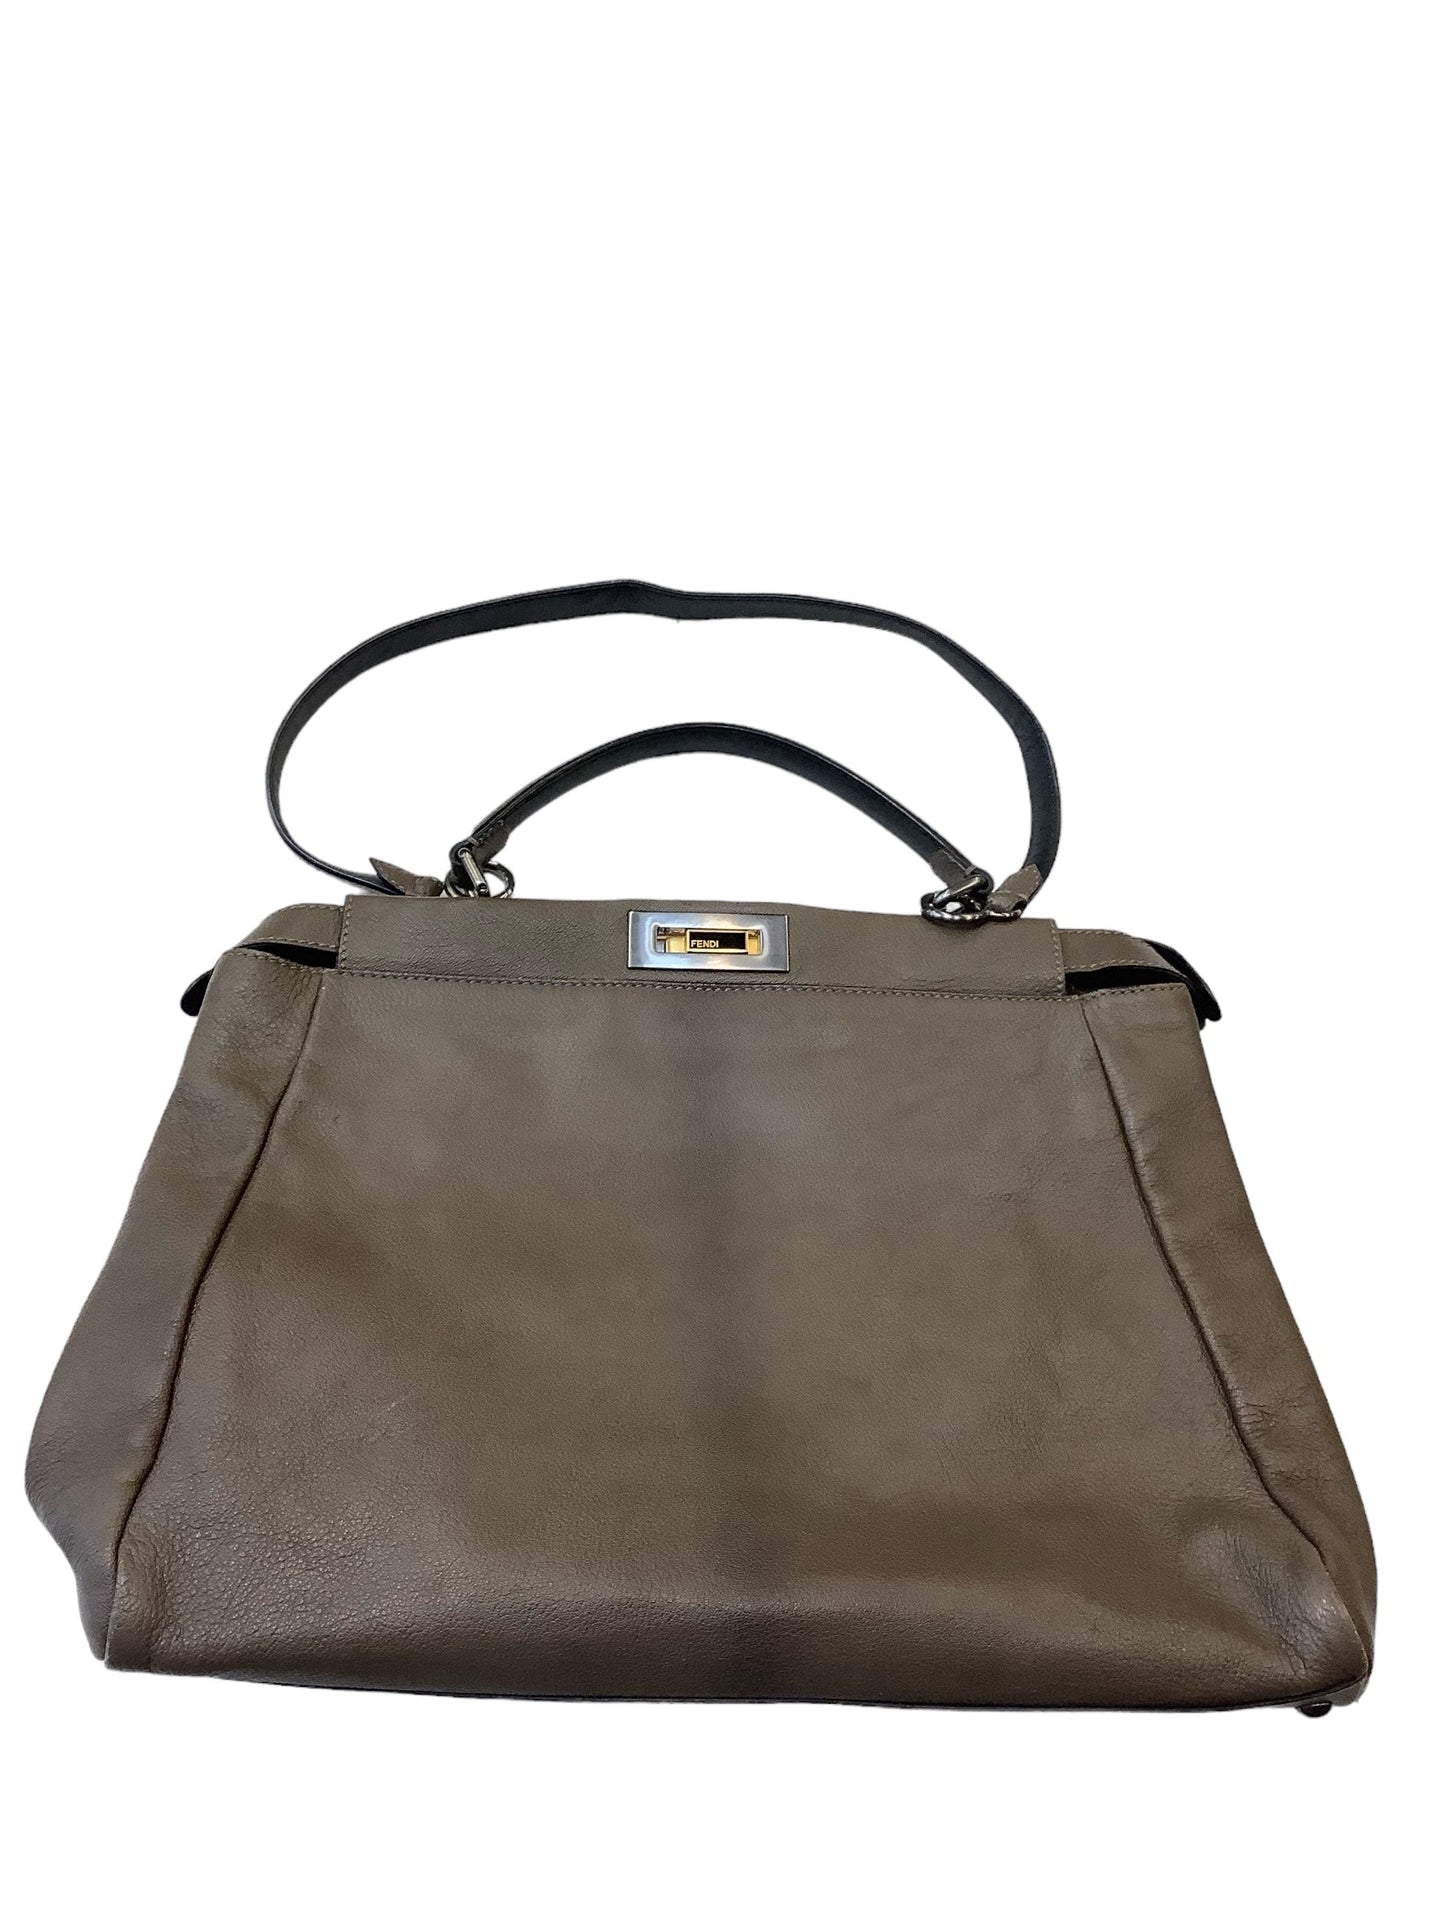 Handbag Luxury Designer By Fendi  Size: Large